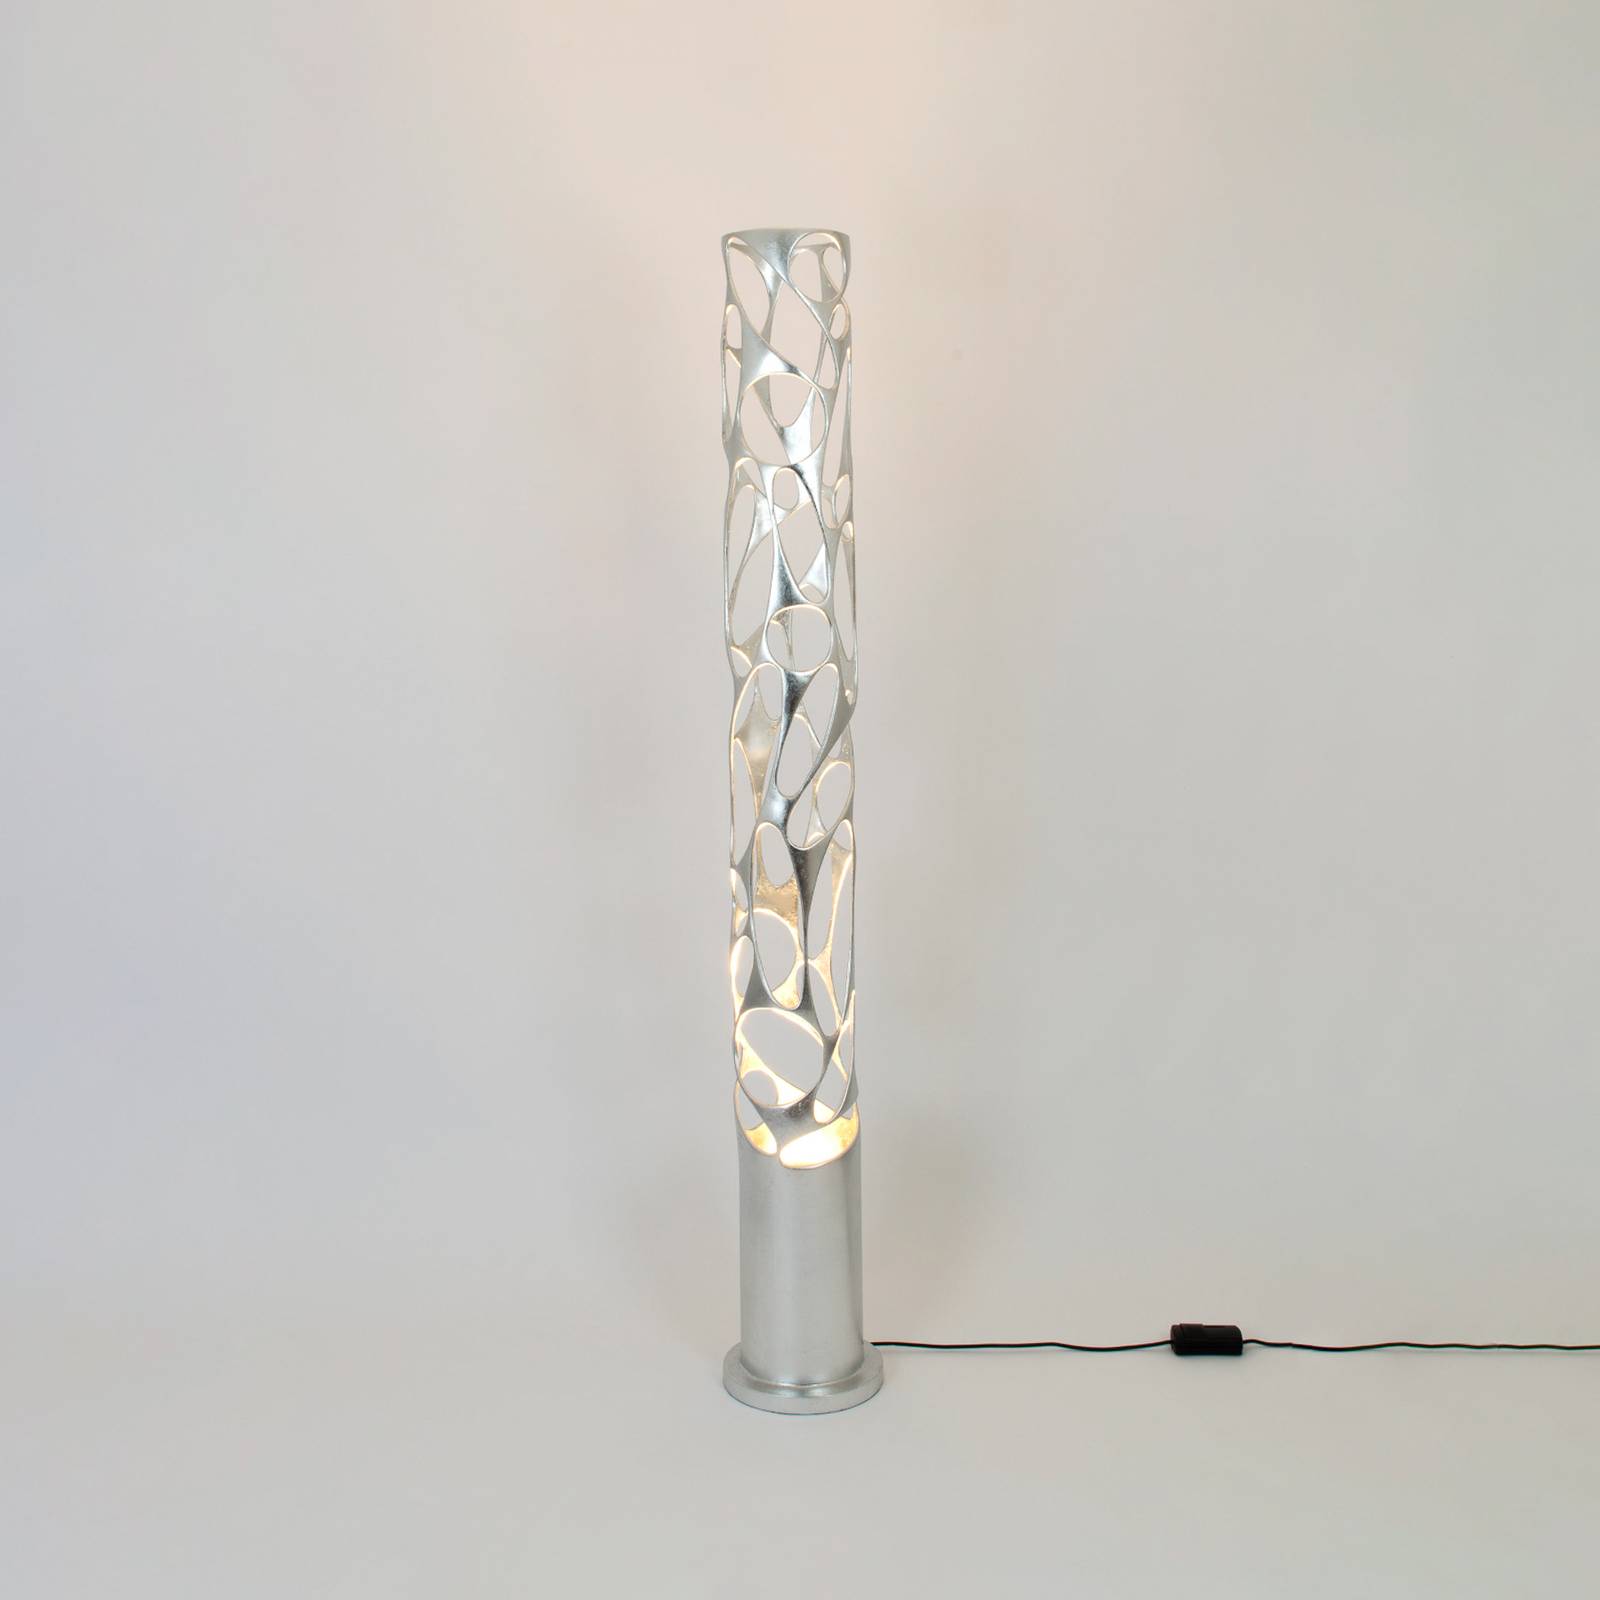 Holländer talismano állólámpa, ezüst színű, 176 cm magas, vasból készült